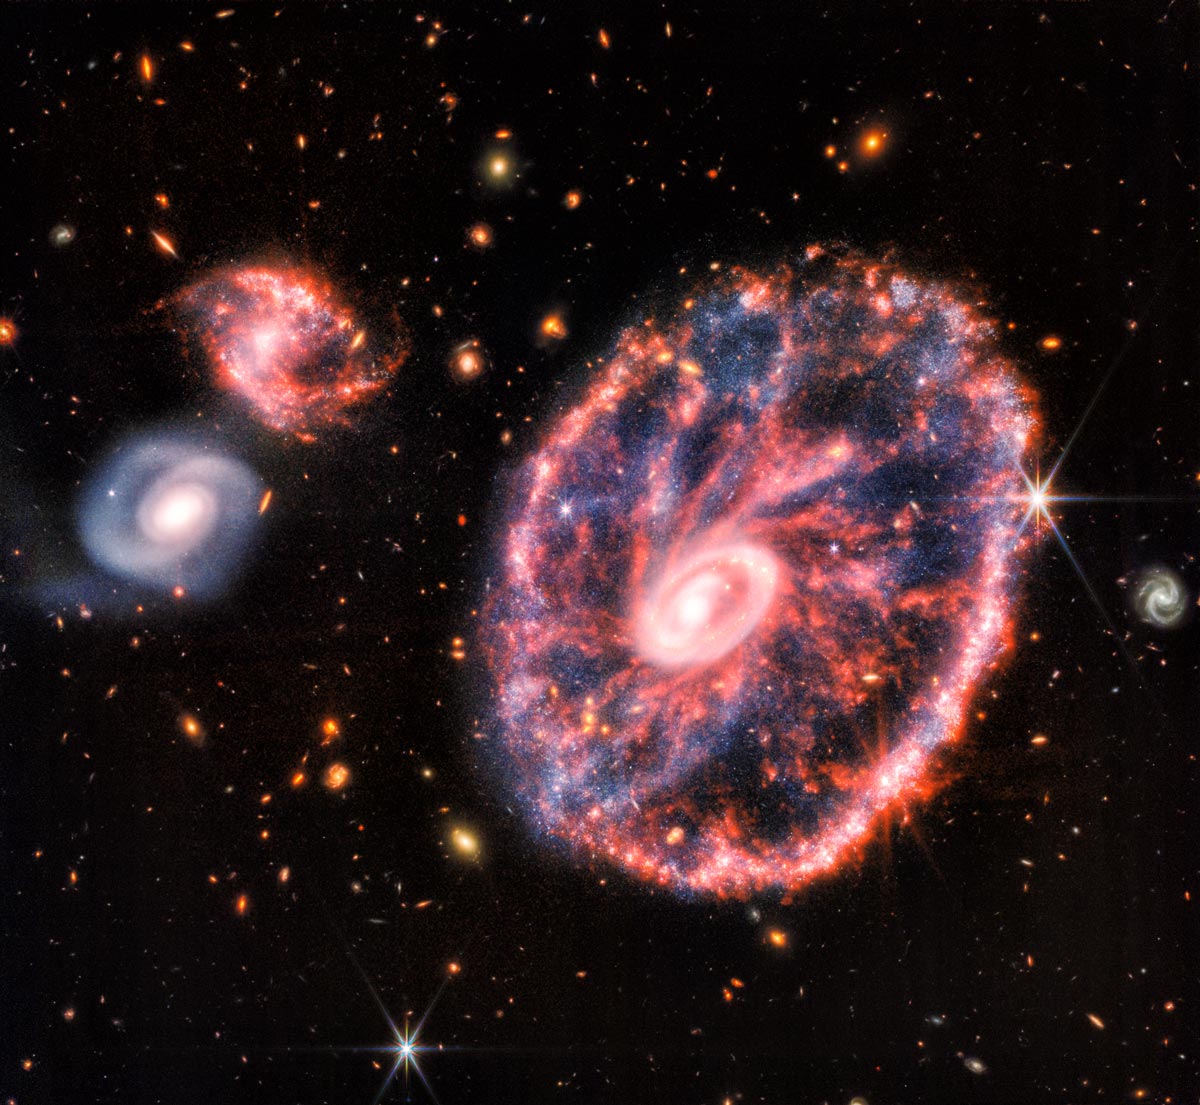 La galaxie de la Roue de chariot capturée par le télescope James-Webb.